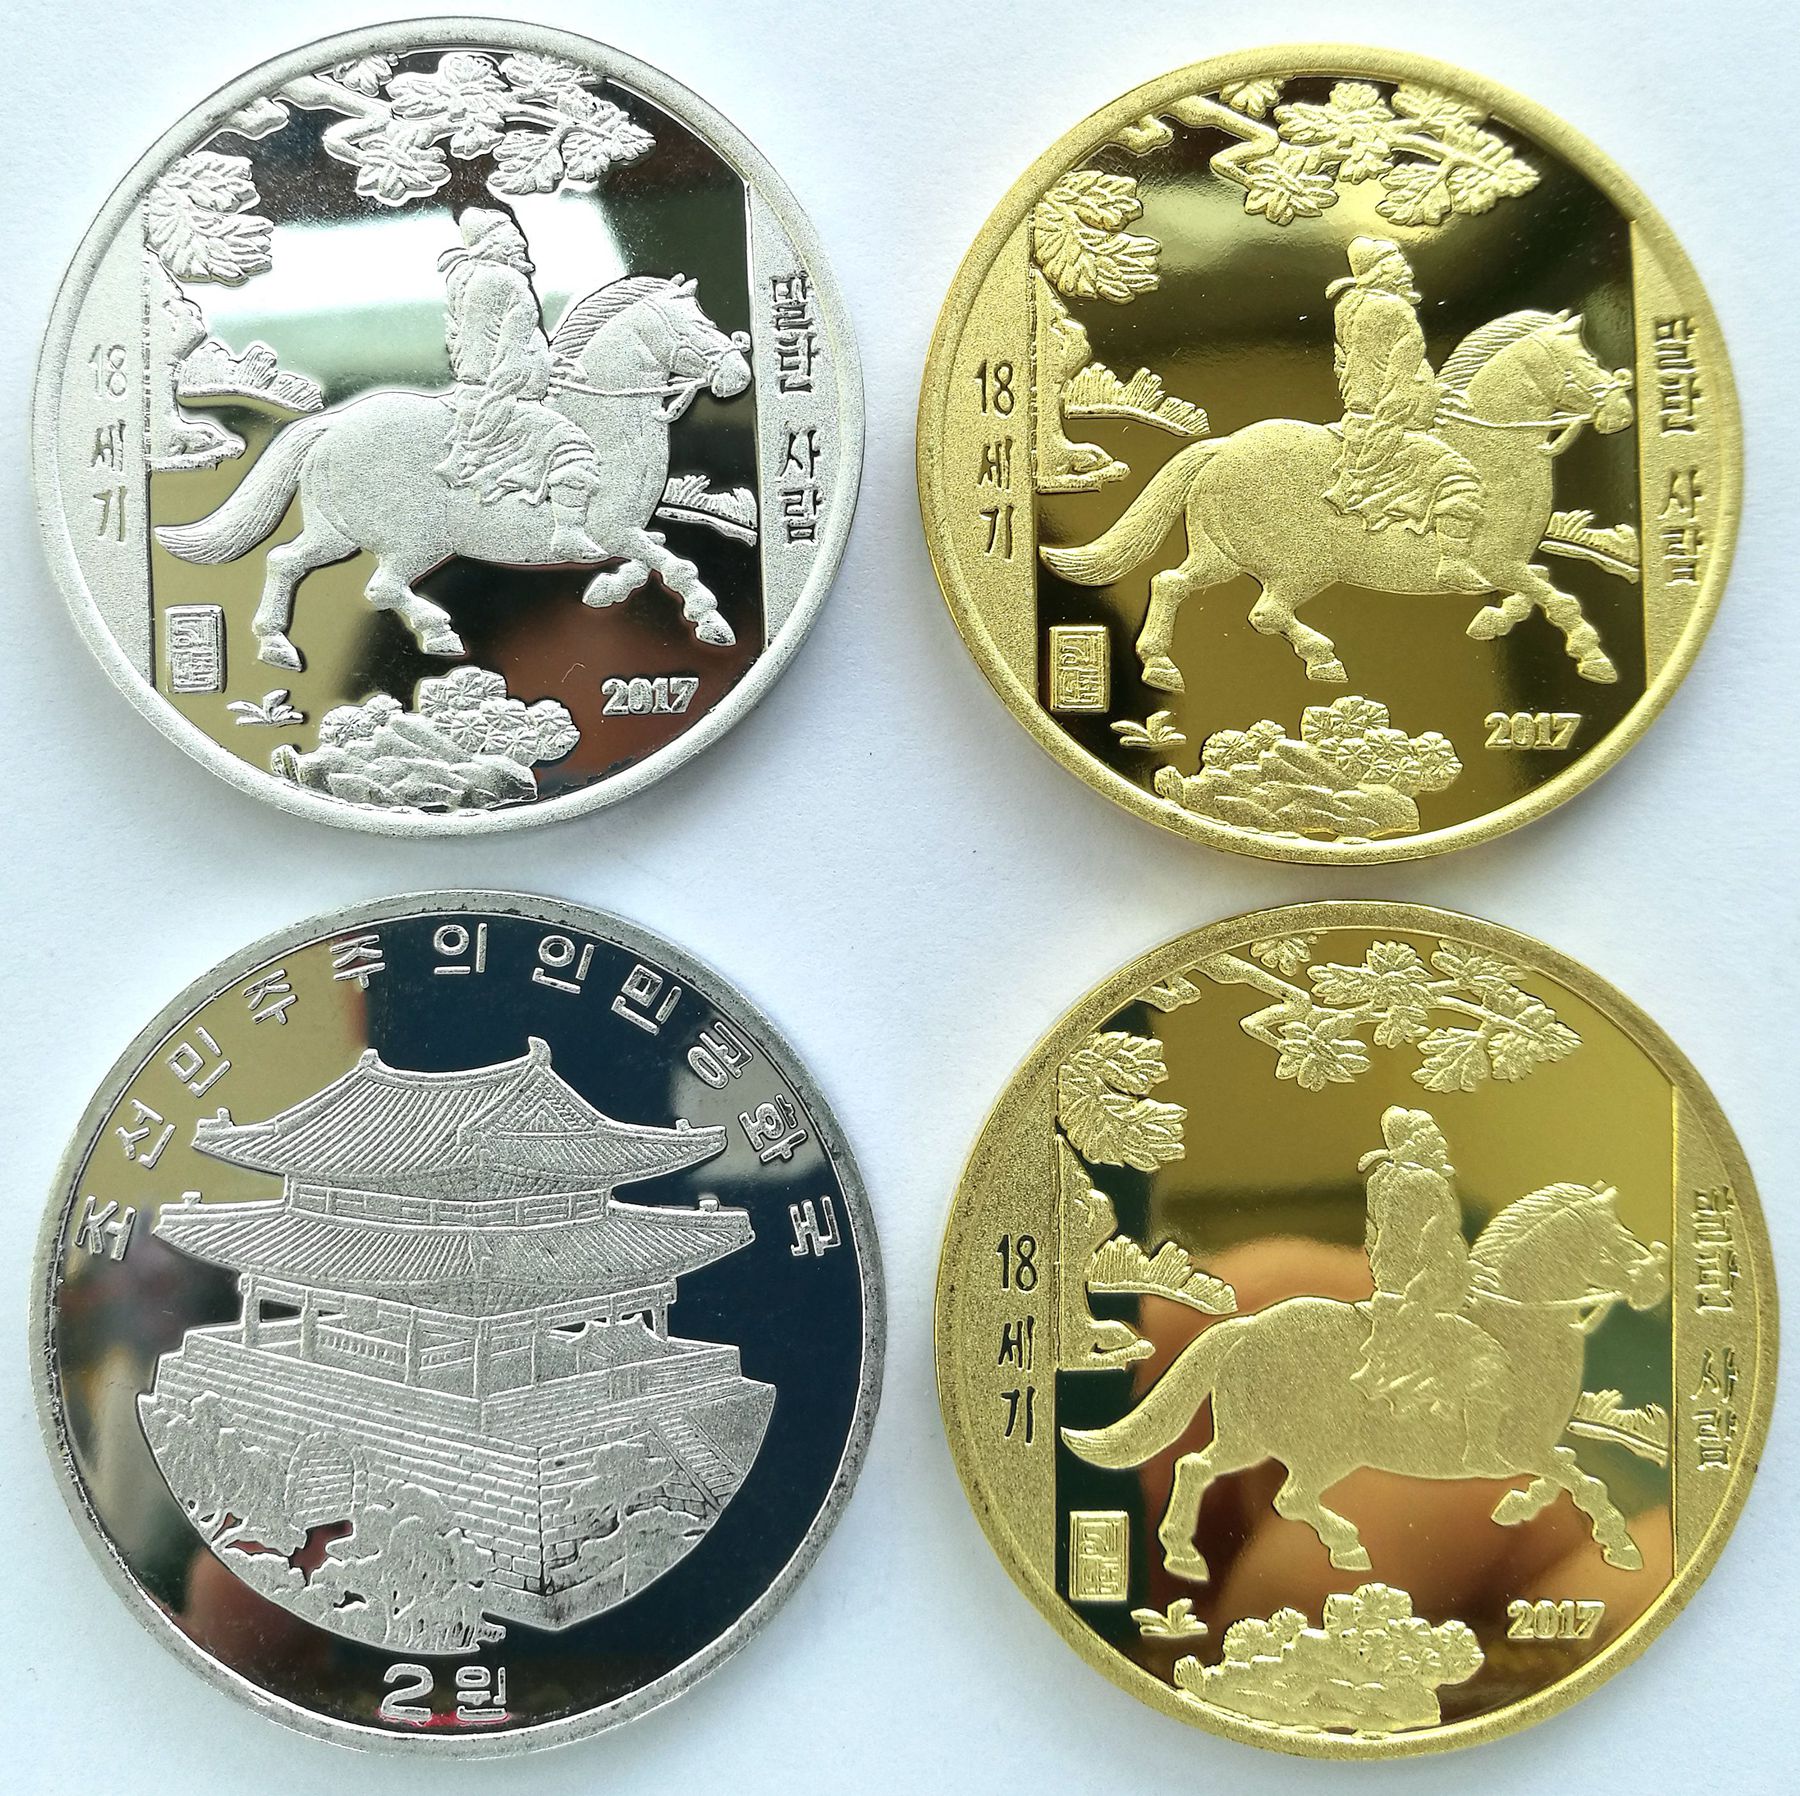 L3214, Korea Painting Commemorative Coins "Official Horse Riding", 2 pcs, 2017